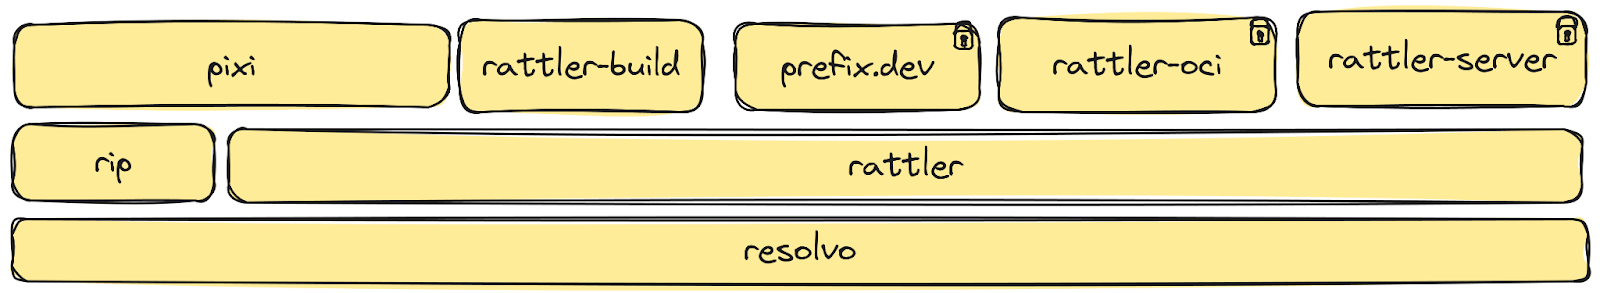 prefix.dev package layout